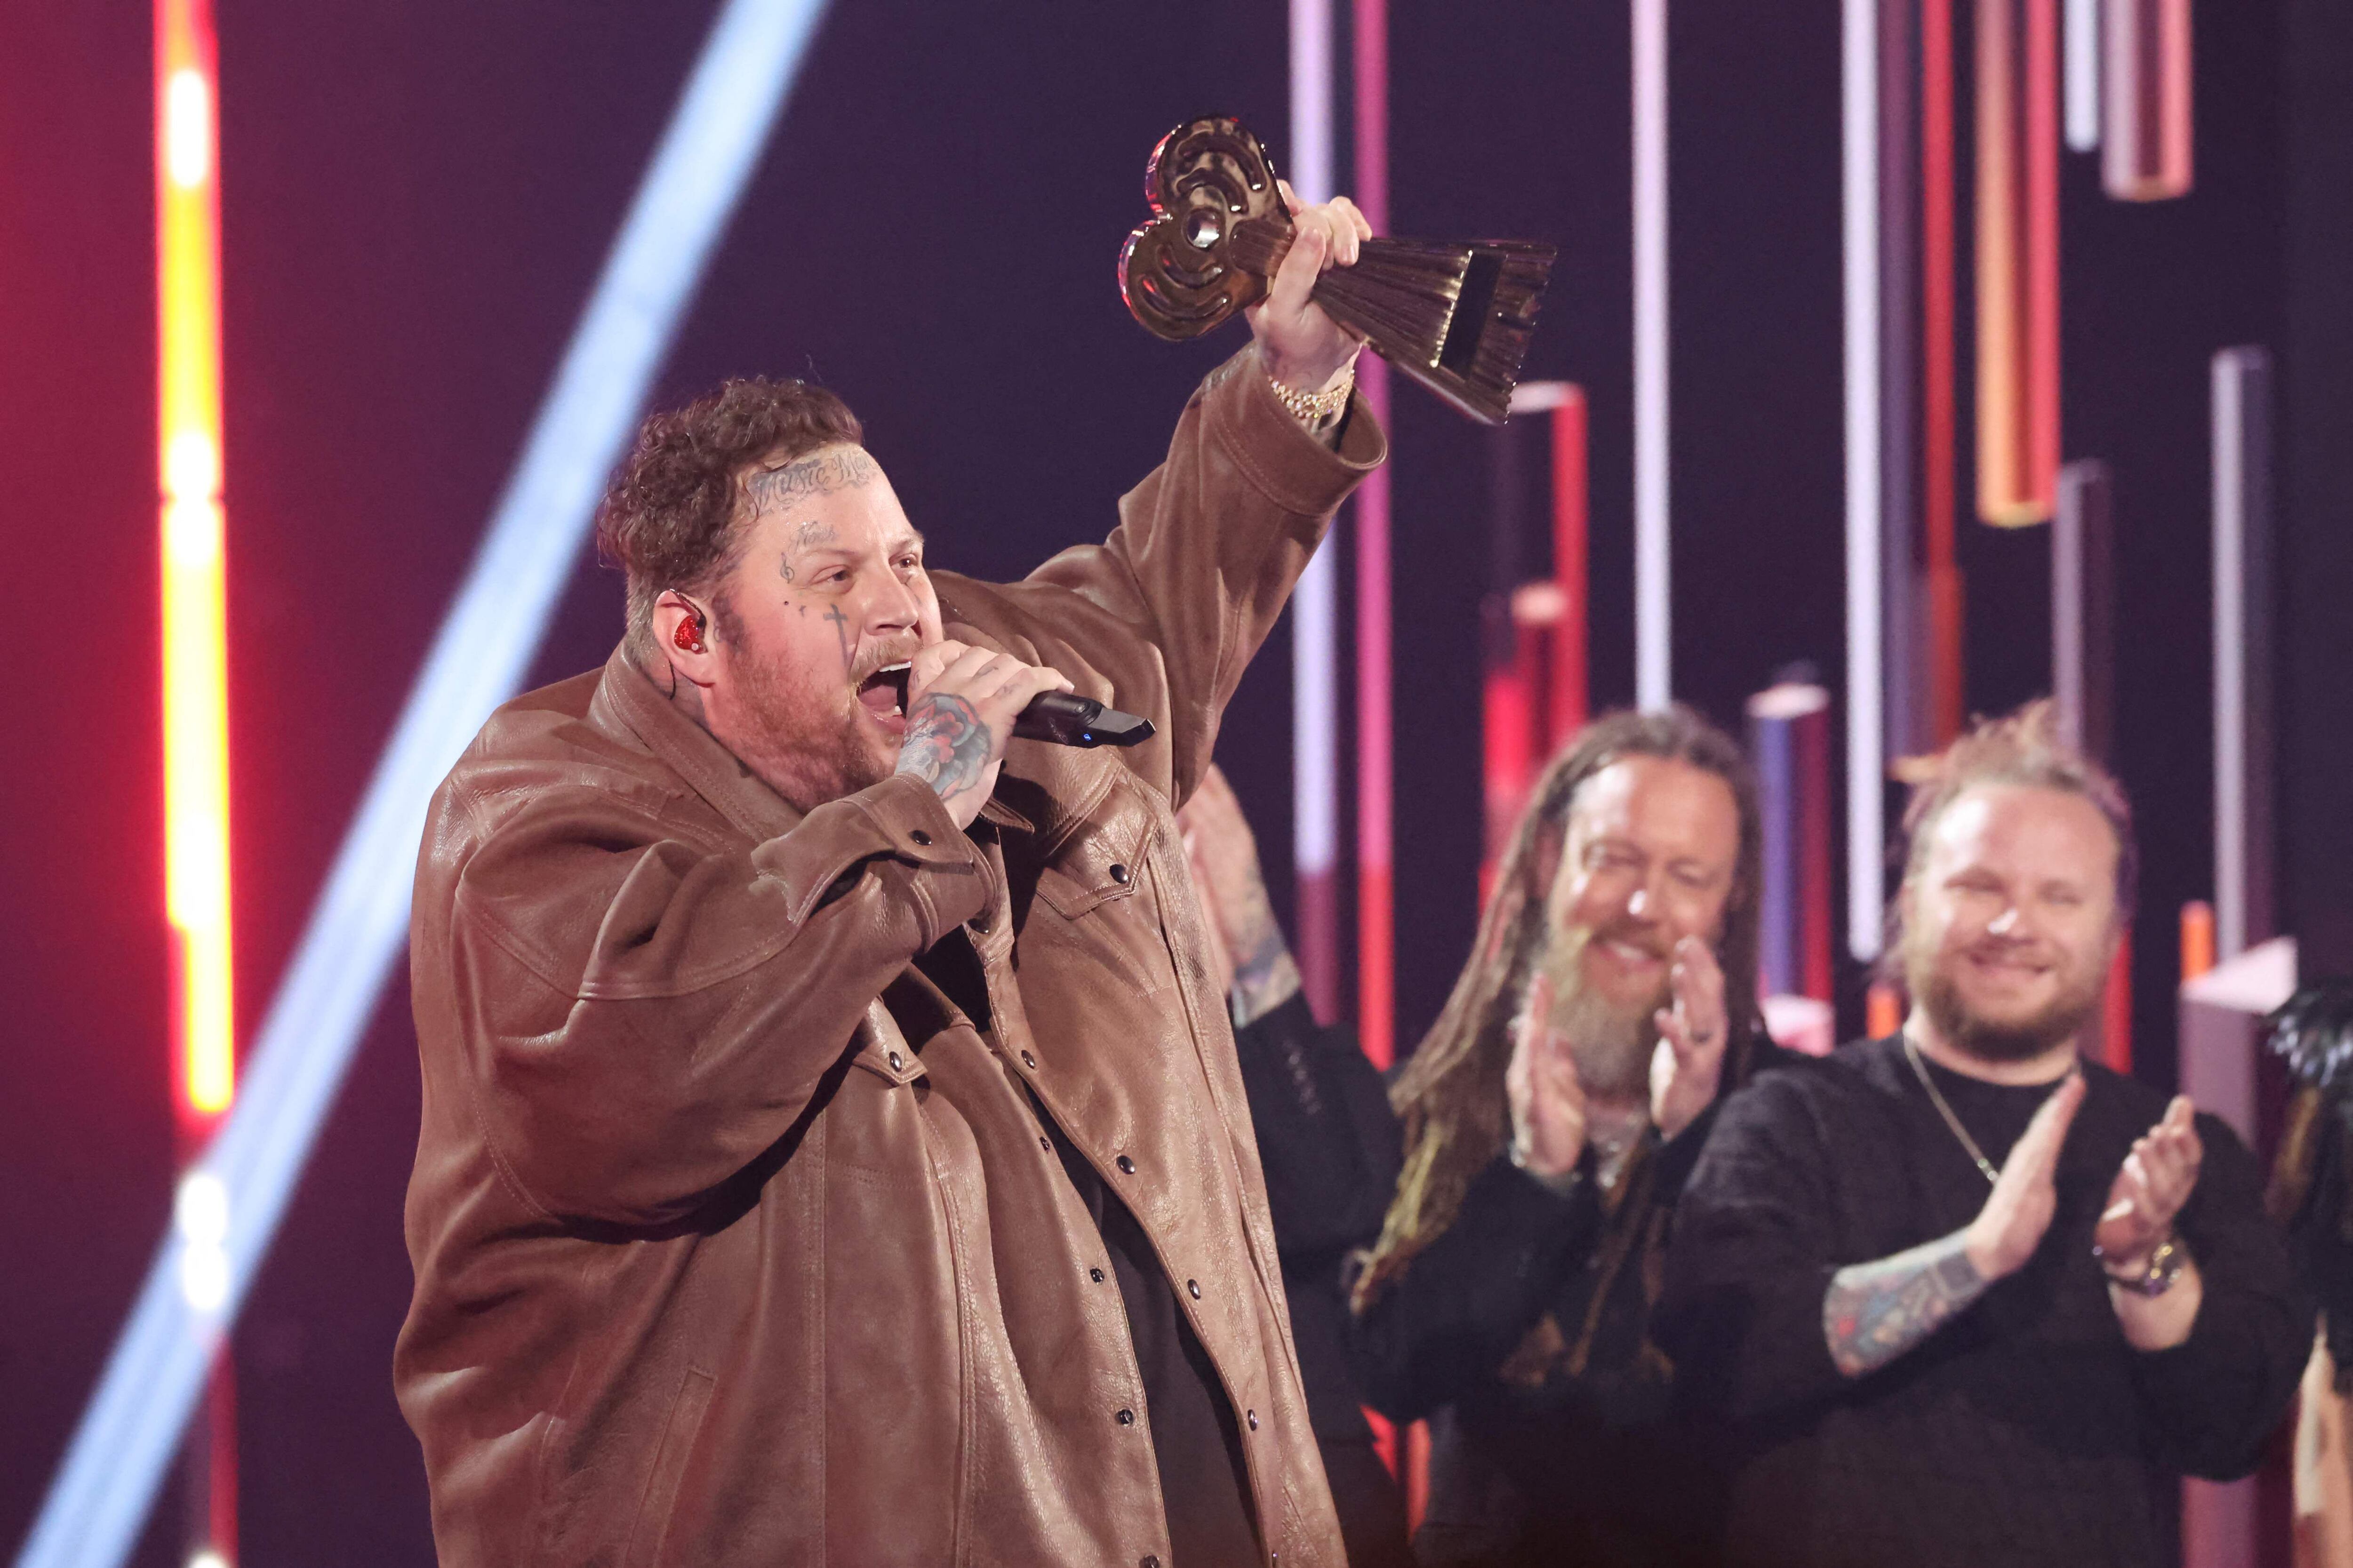 Jelly Roll se mostró muy emocionado al recibir el premio a mejor artista nuevo de country.